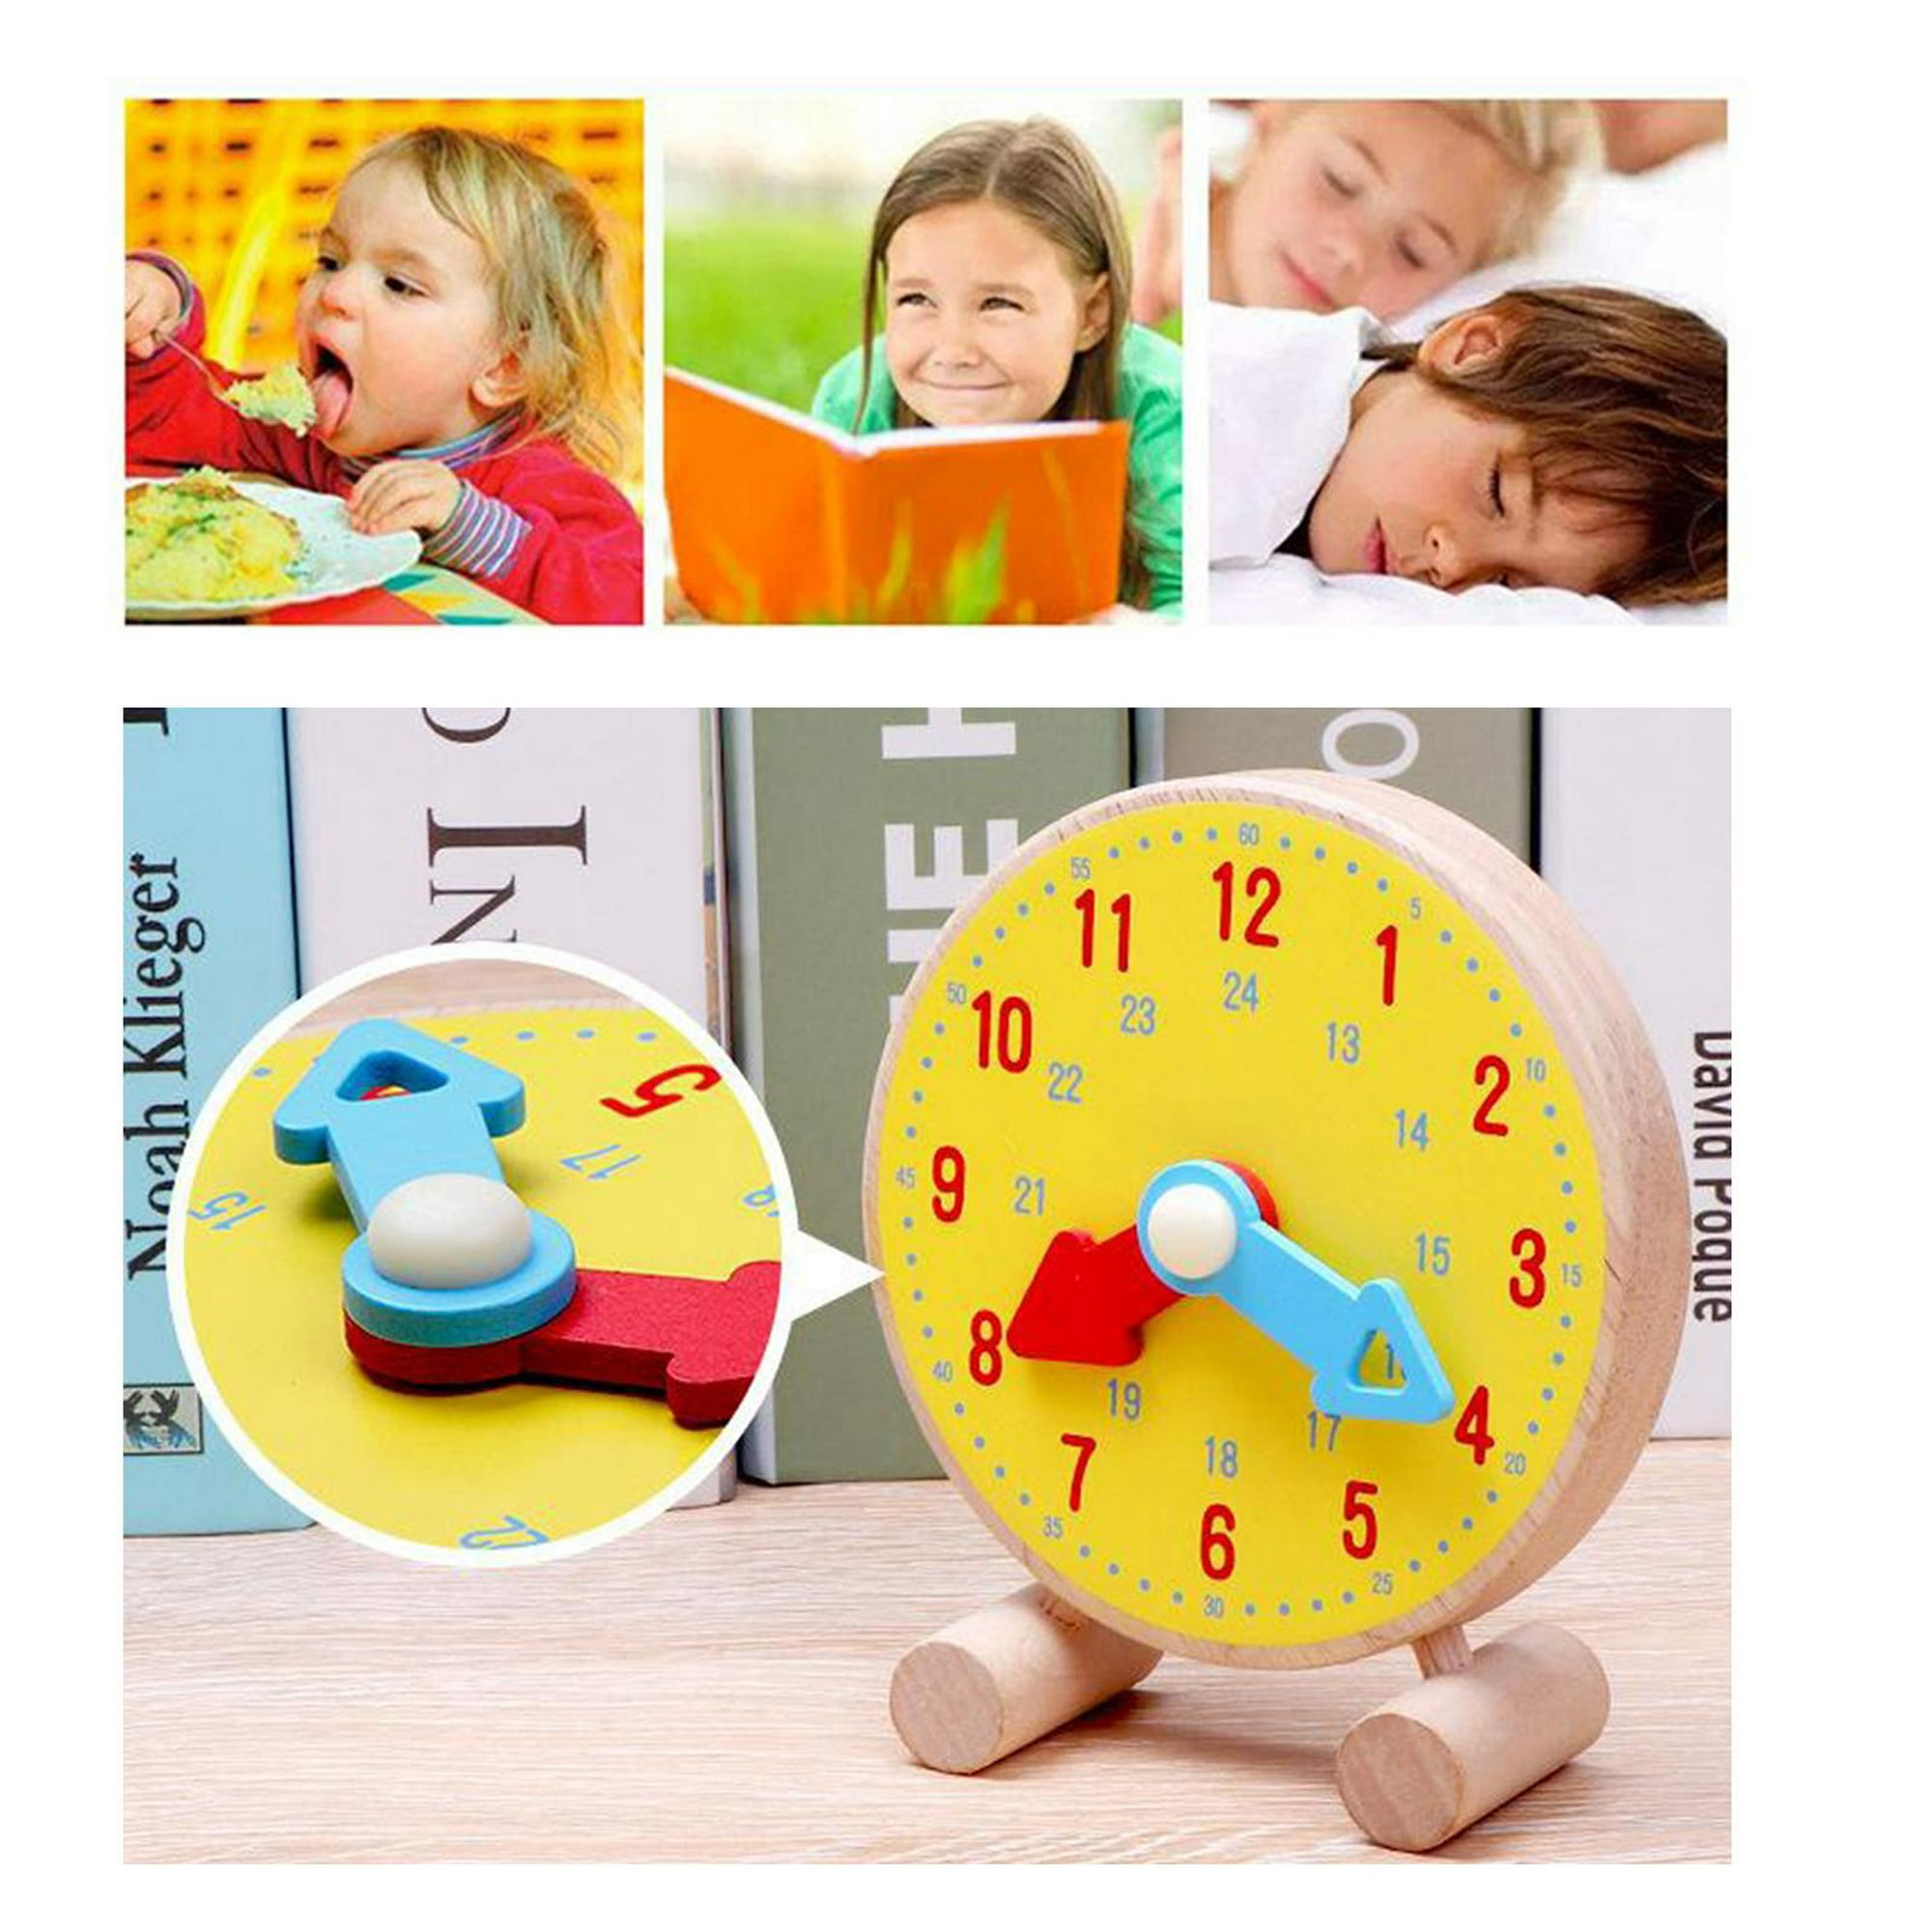 Relojes para niños: Edad, consejos de compra - Aprendiendo con Julia